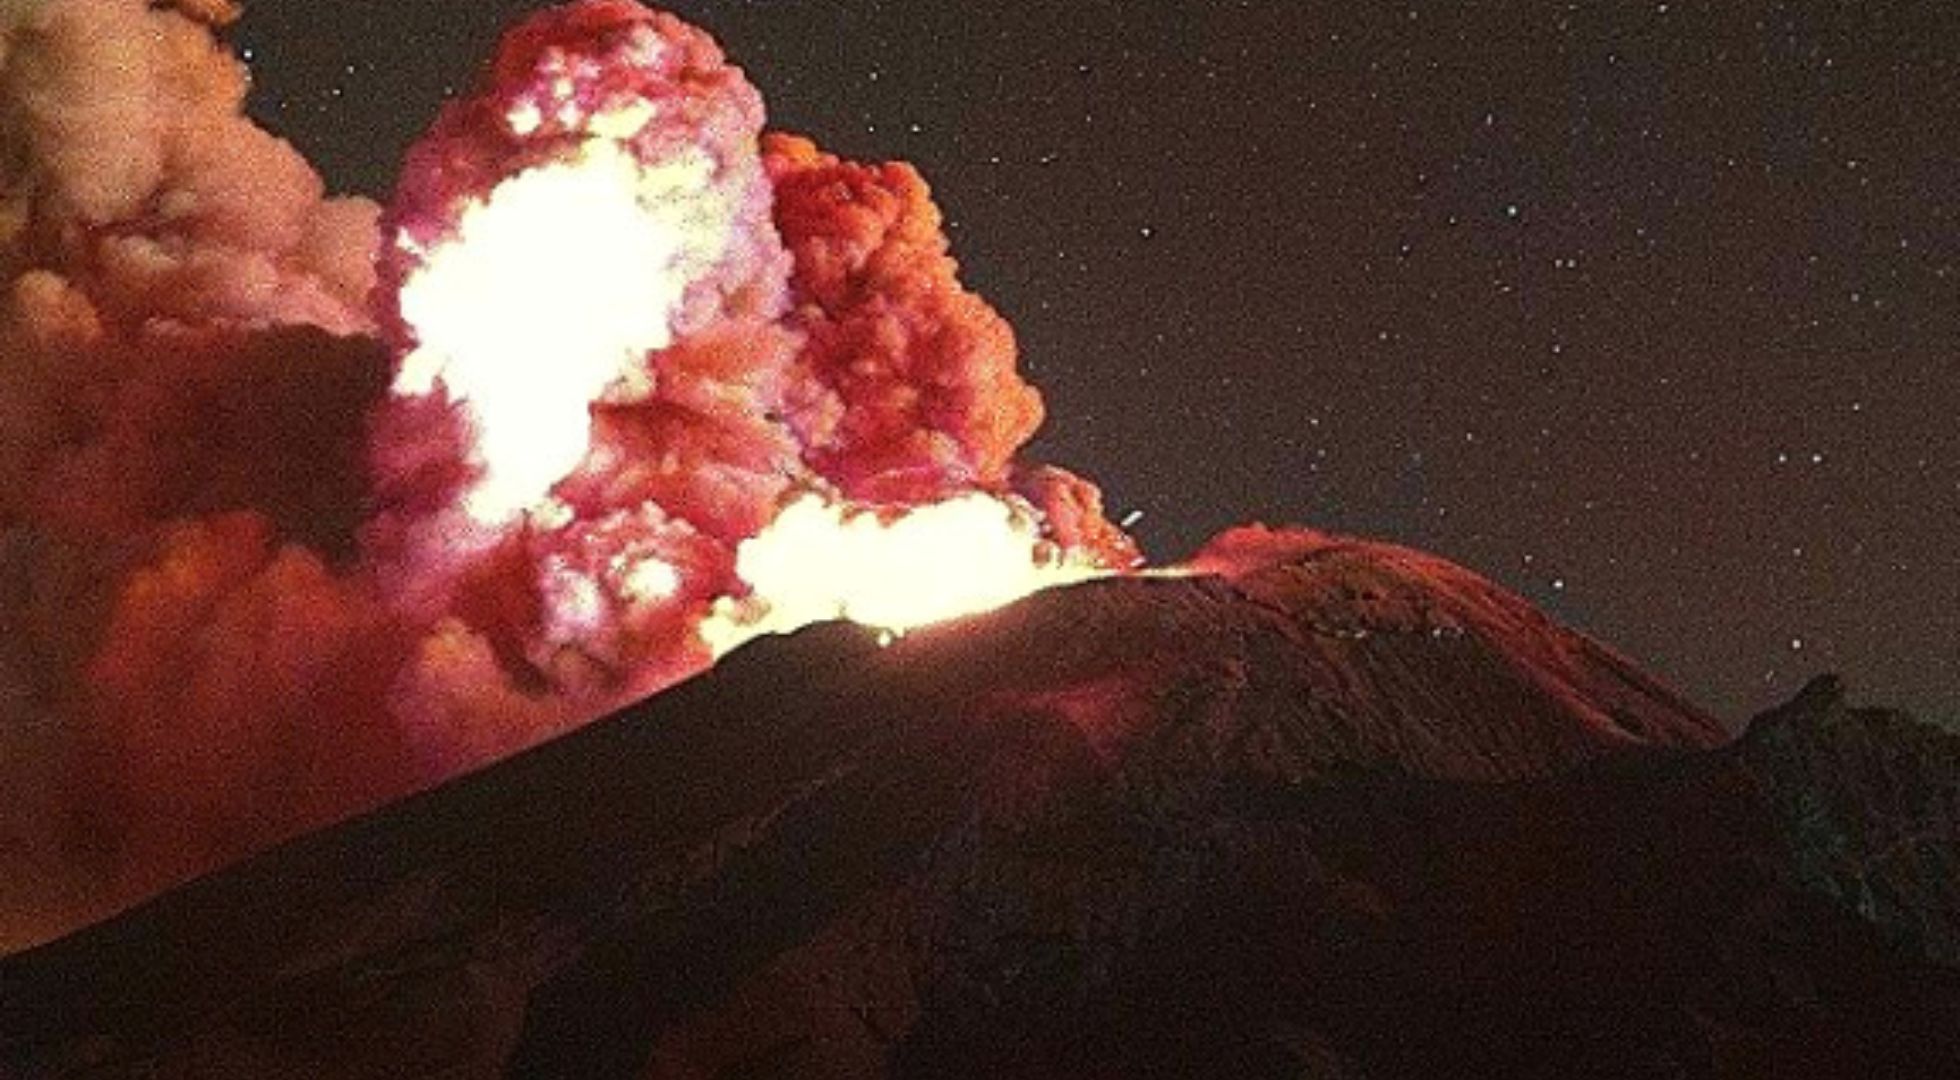 Volcán Popocatépetl hoy 30 de mayo: actividad volcanica se mantiene estable